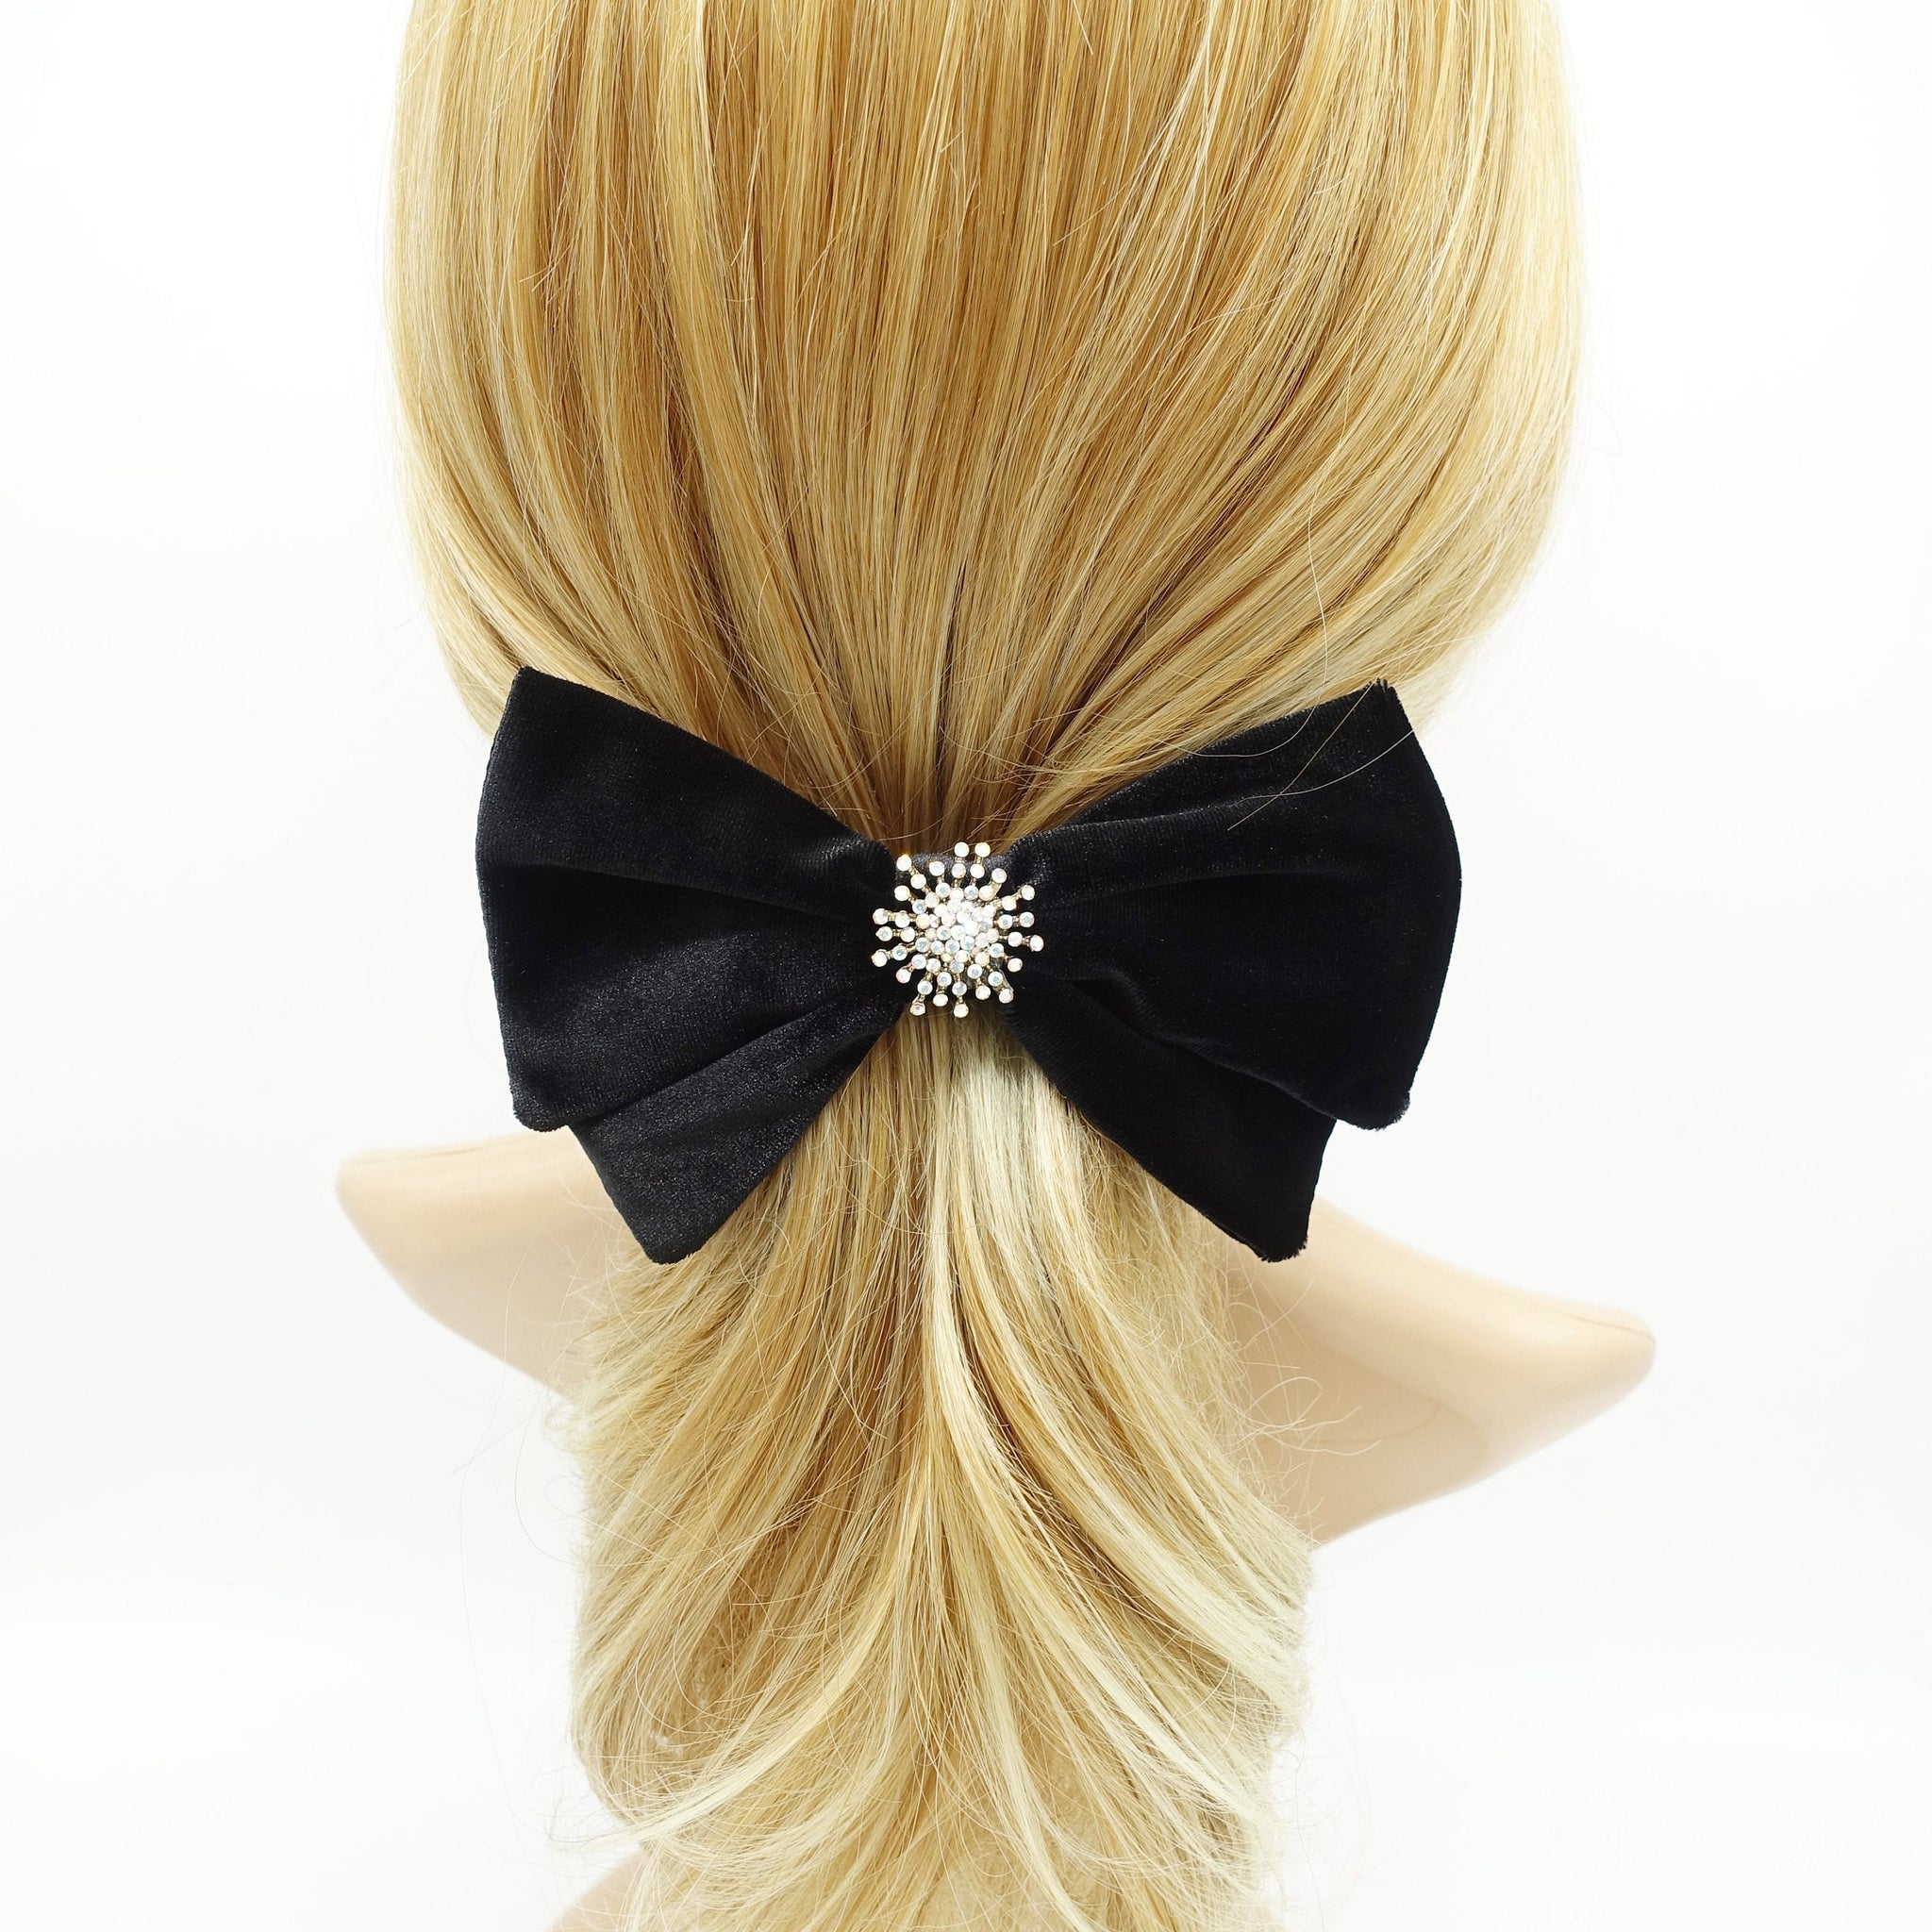 veryshine.com Barrette (Bow) Snow flower black velvet hair bow rhinestone casting embellished bling hair accessory for women